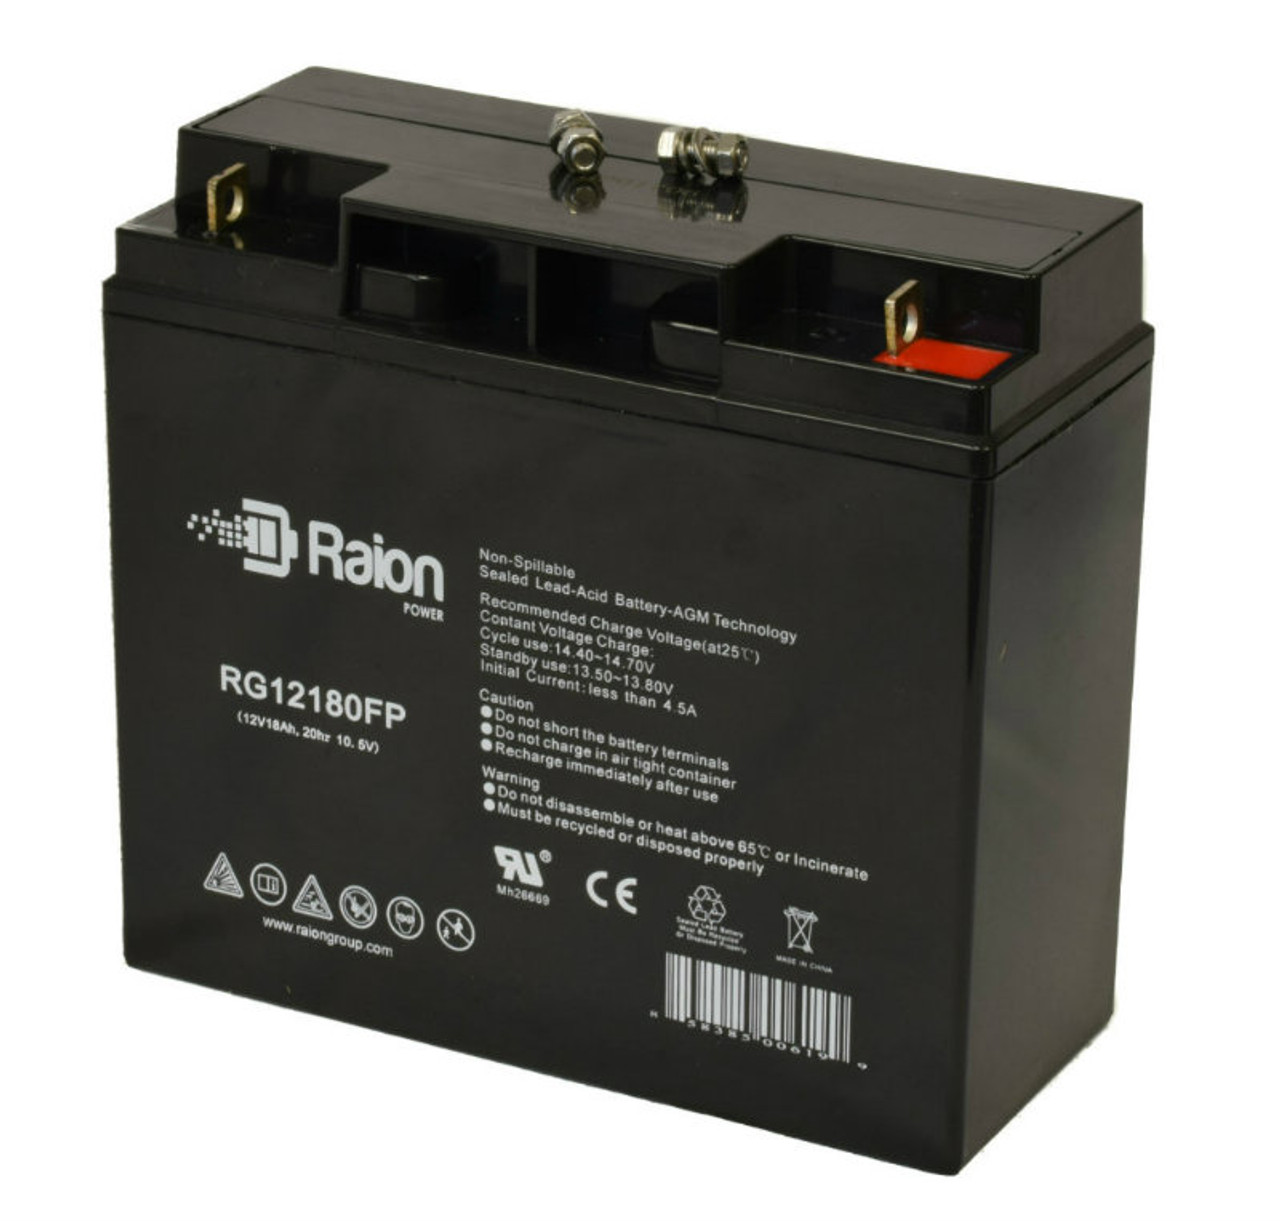 Raion Power RG12180FP 12V 18Ah Lead Acid Battery for Duracell Powerpack 450